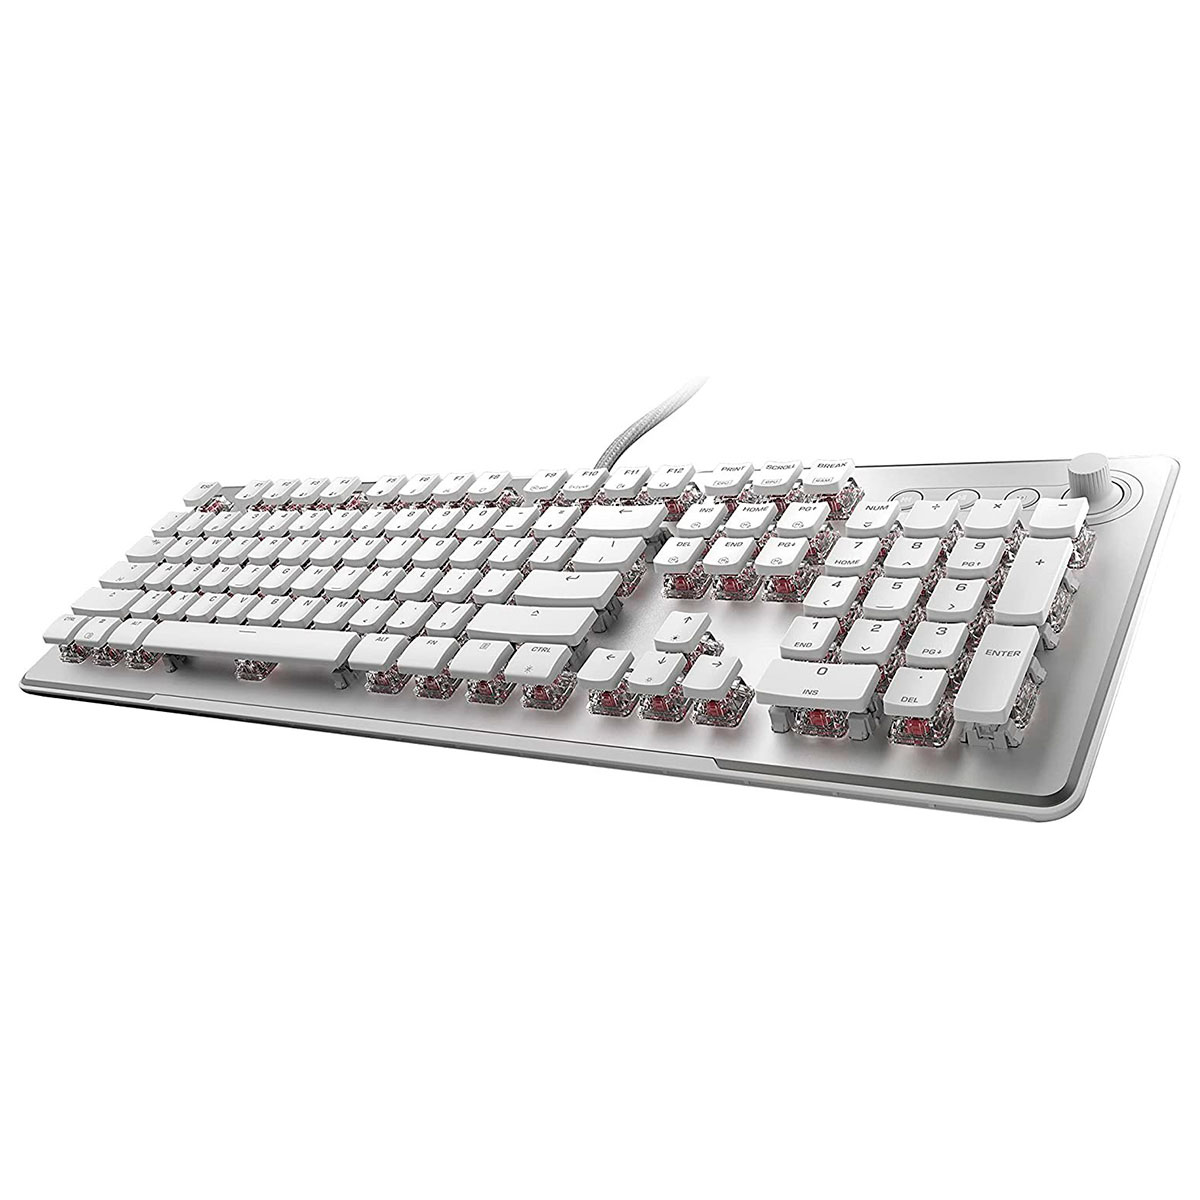 II Tastatur RGB Max Vulcan Hvid Aimo Switch (Mekanisk) m/Rød Gaming Roccat